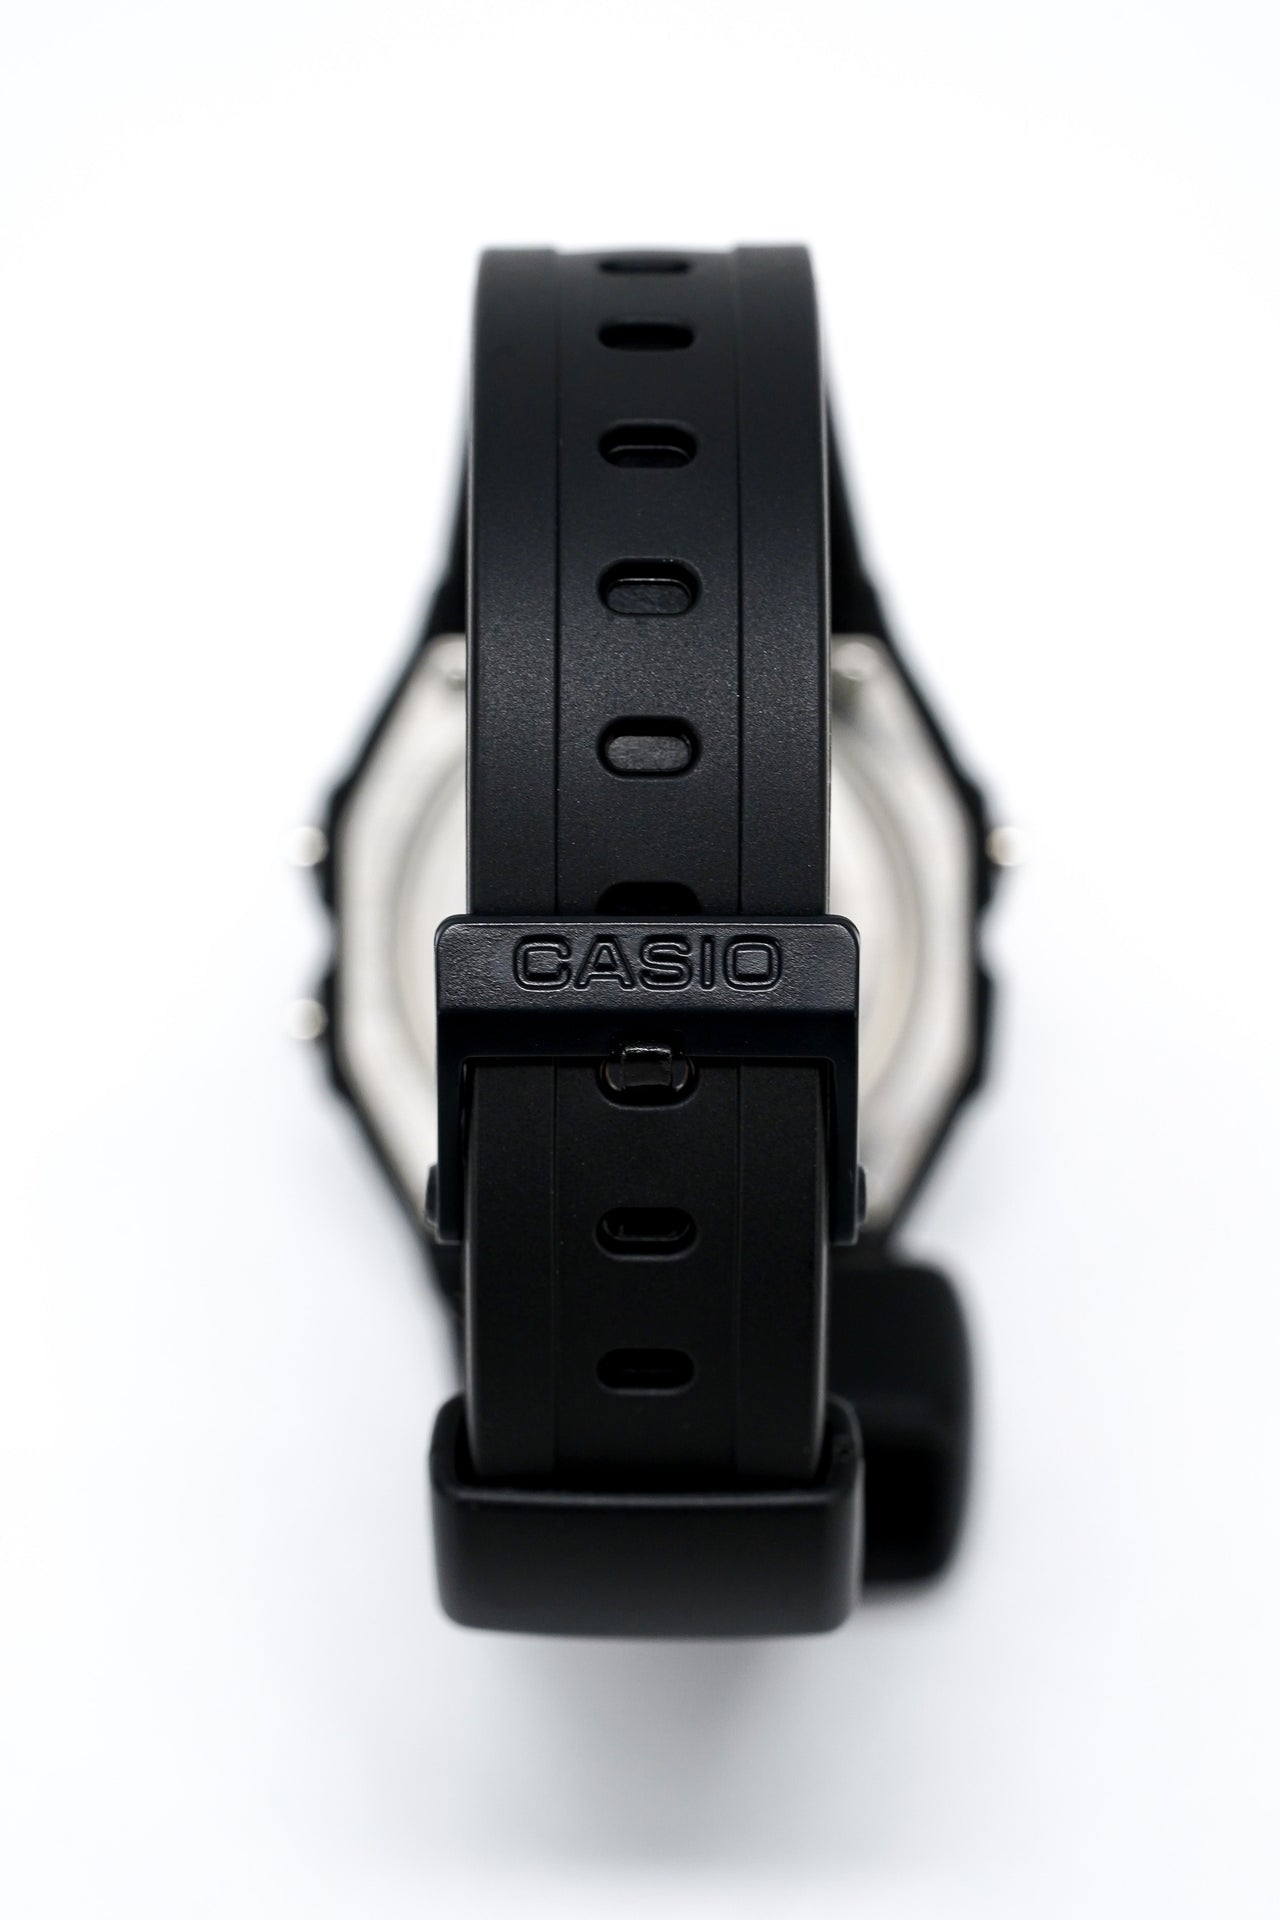 Casio Watch Alarm Chronograph Digital Black W-59-1VQ